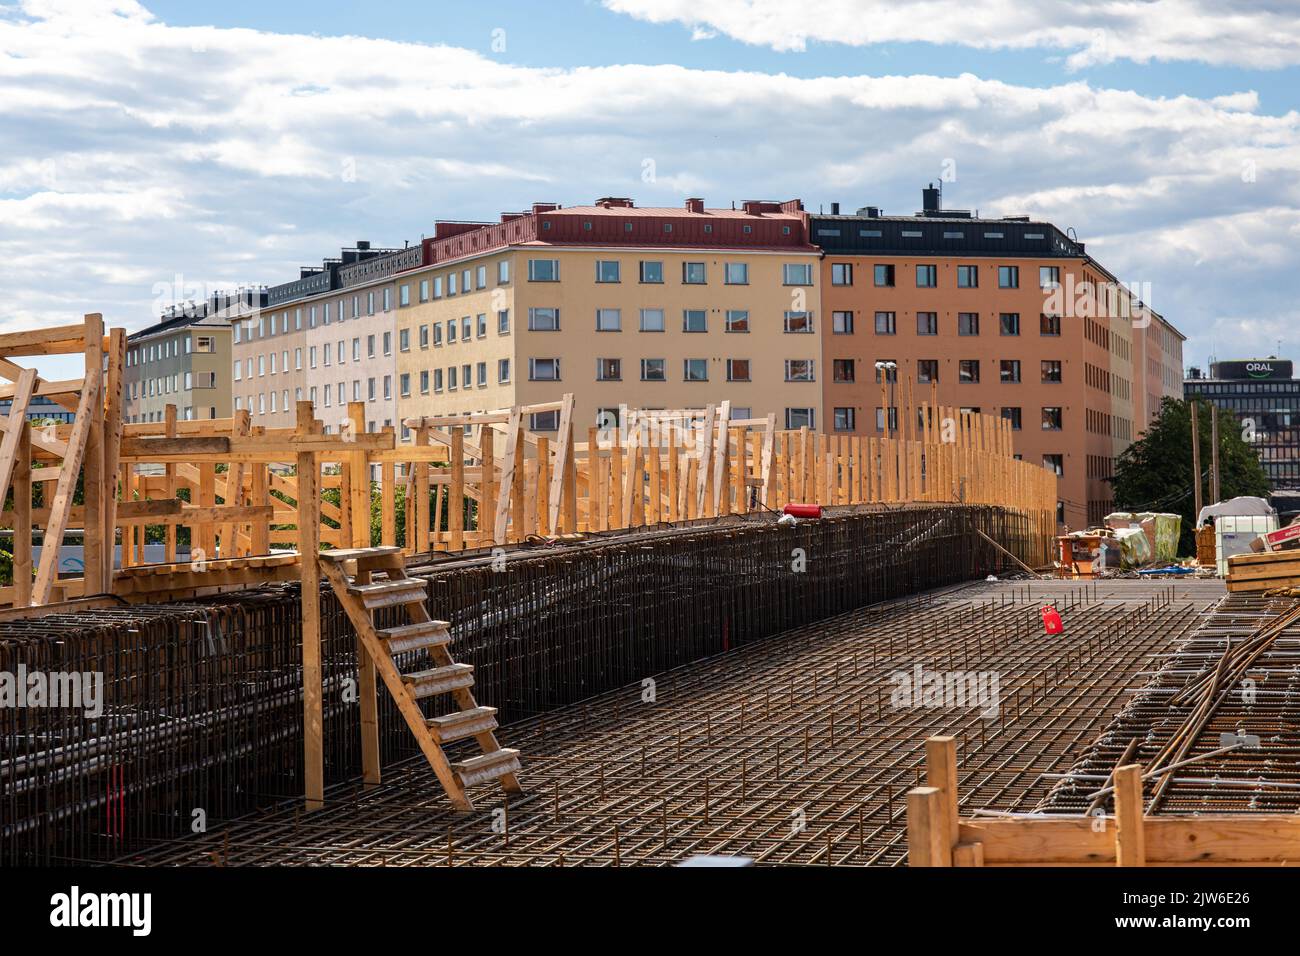 Uusi Näkinsilta footbridge from Merihaka to Hakaniemi district under construction in Helsinki, Finland Stock Photo